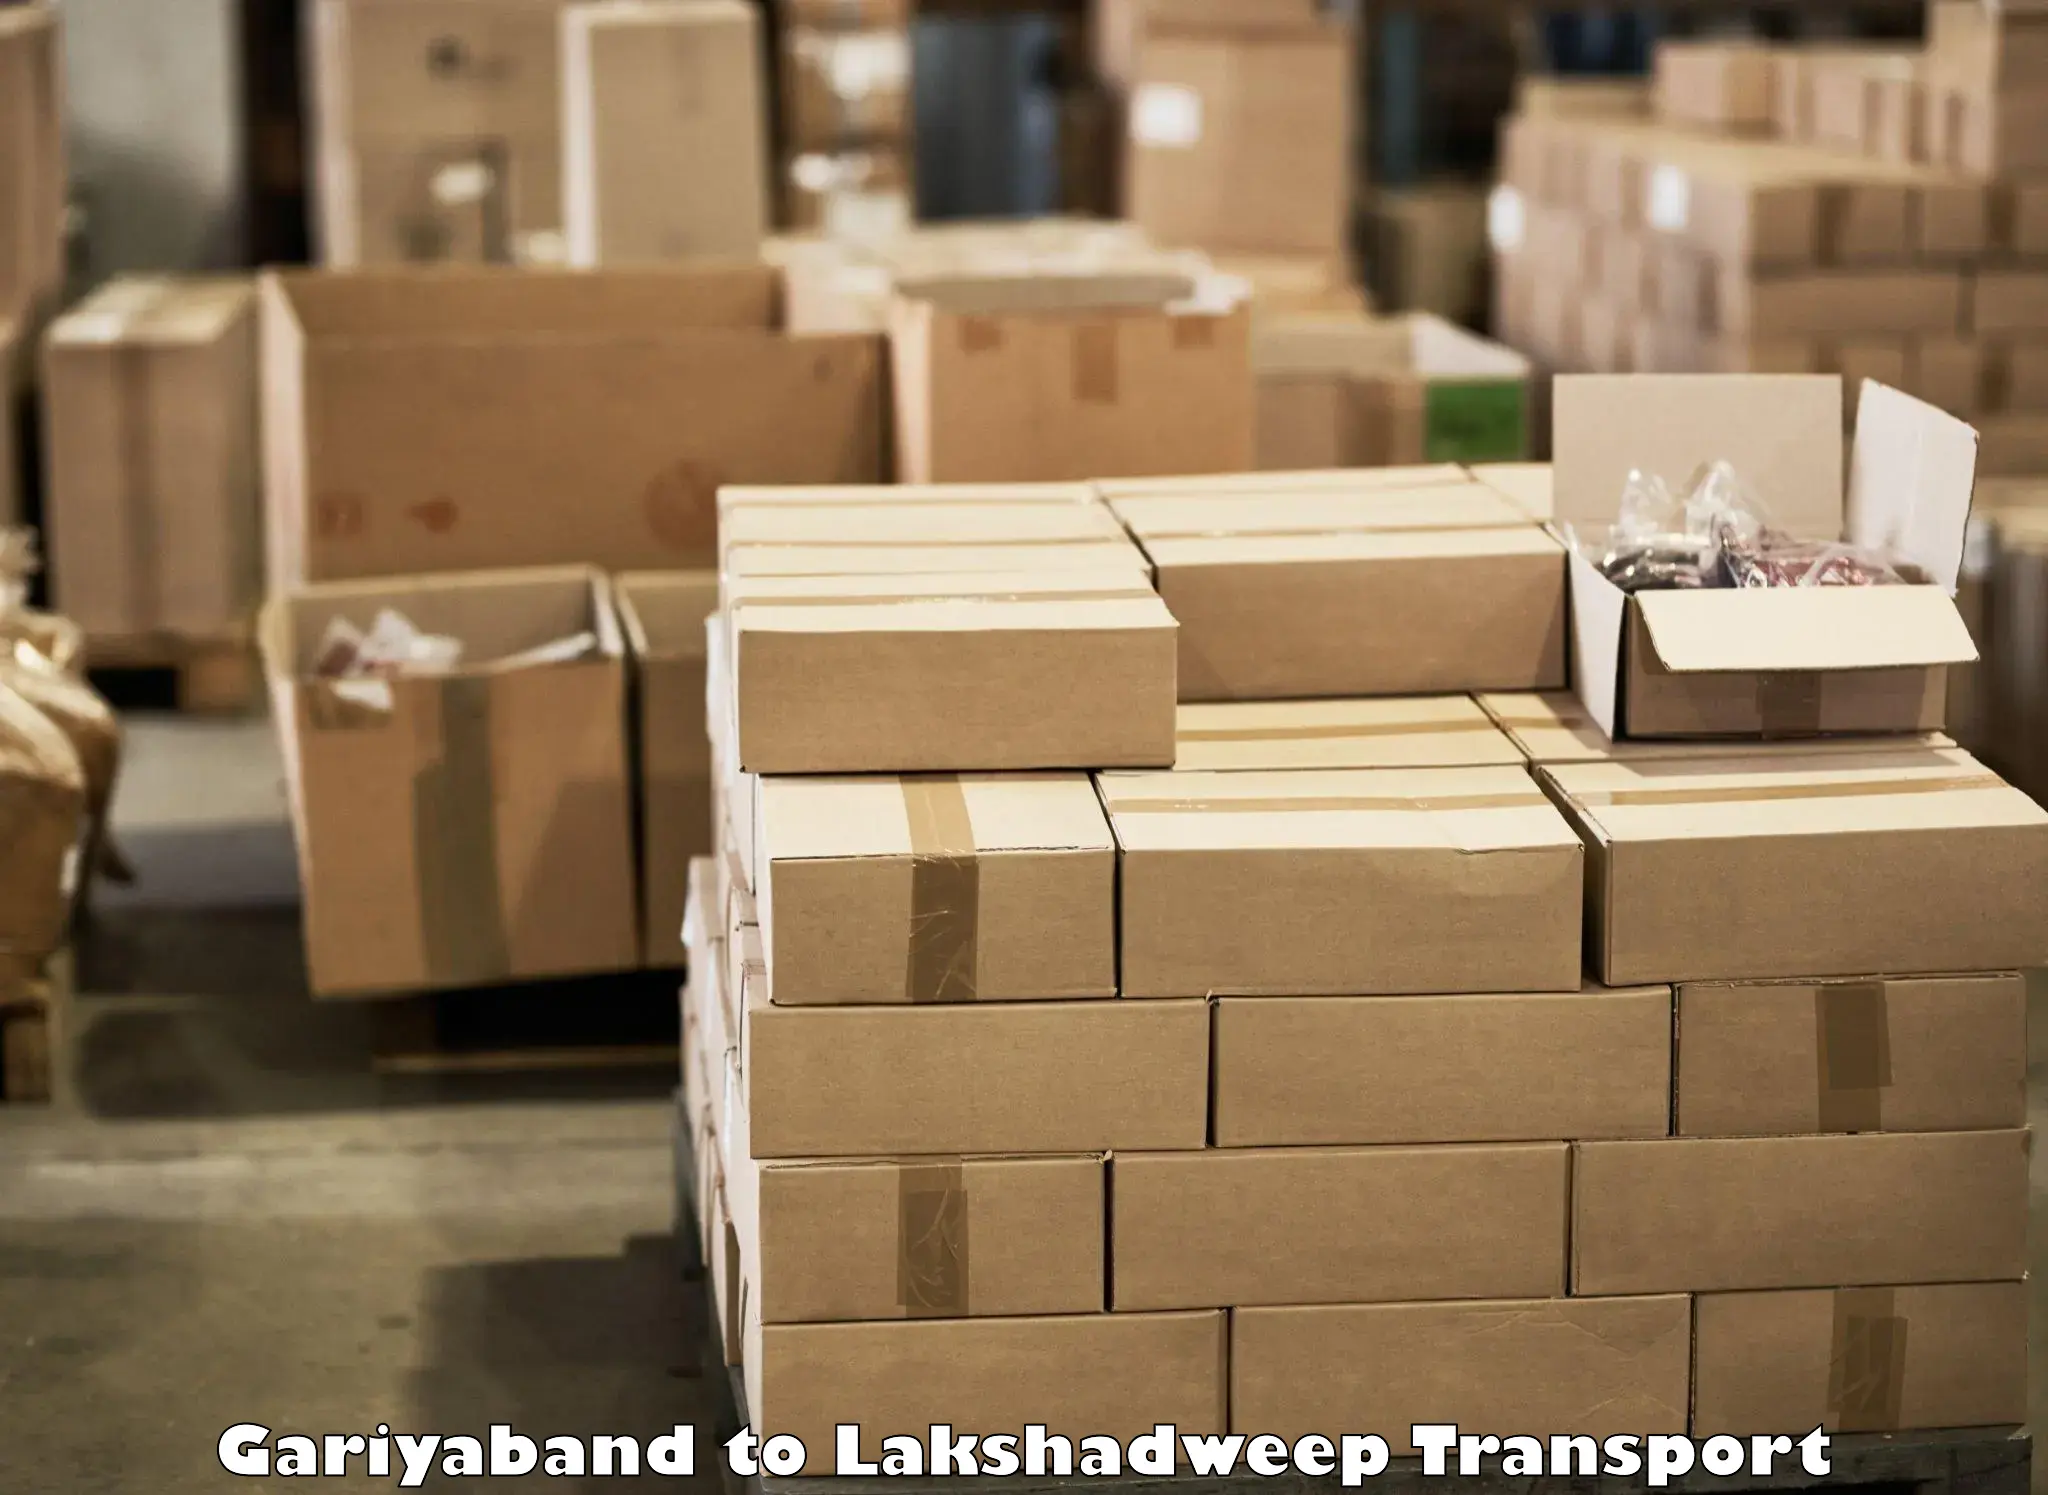 Online transport service Gariyaband to Lakshadweep